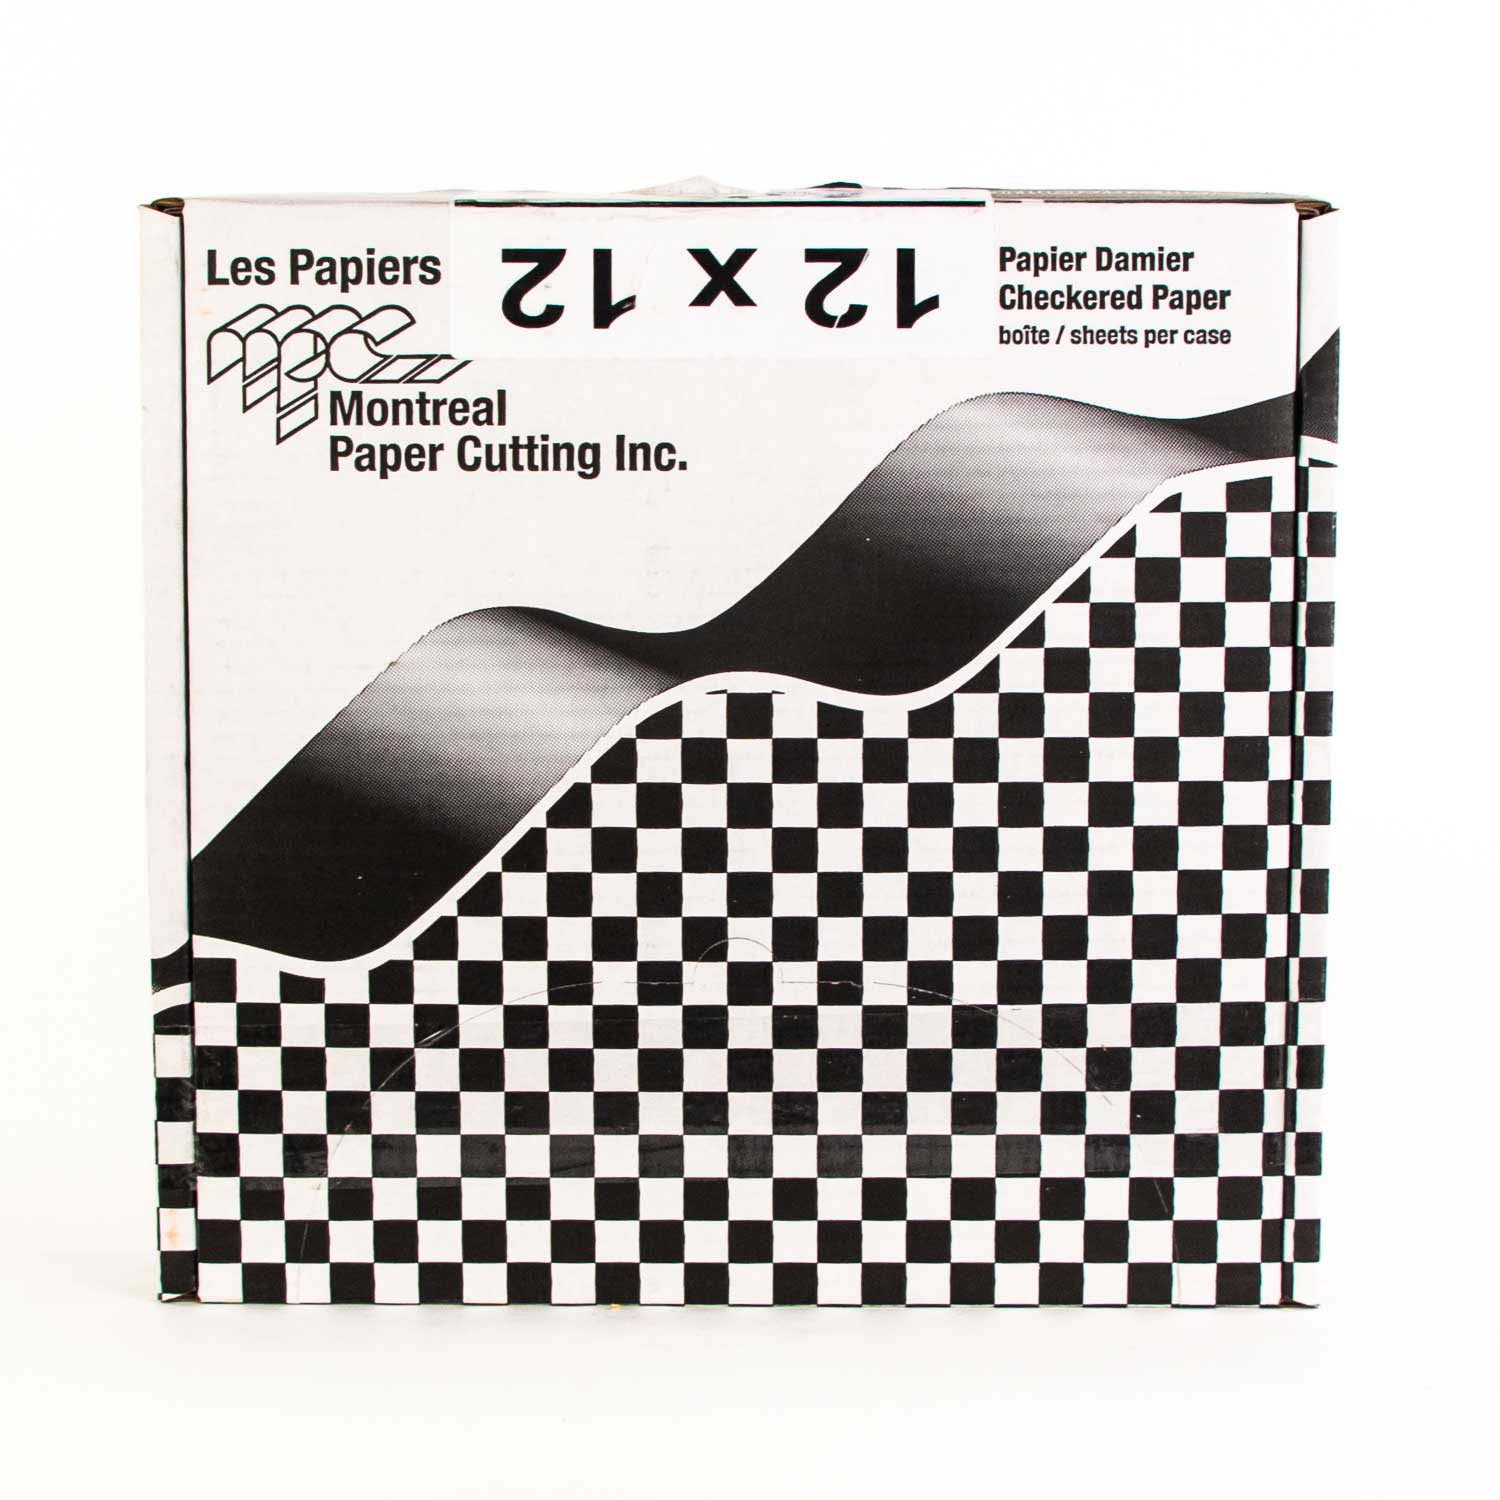 Newspaper Printed Wax Paper Sheet 12x12 x1000 - Wax paper